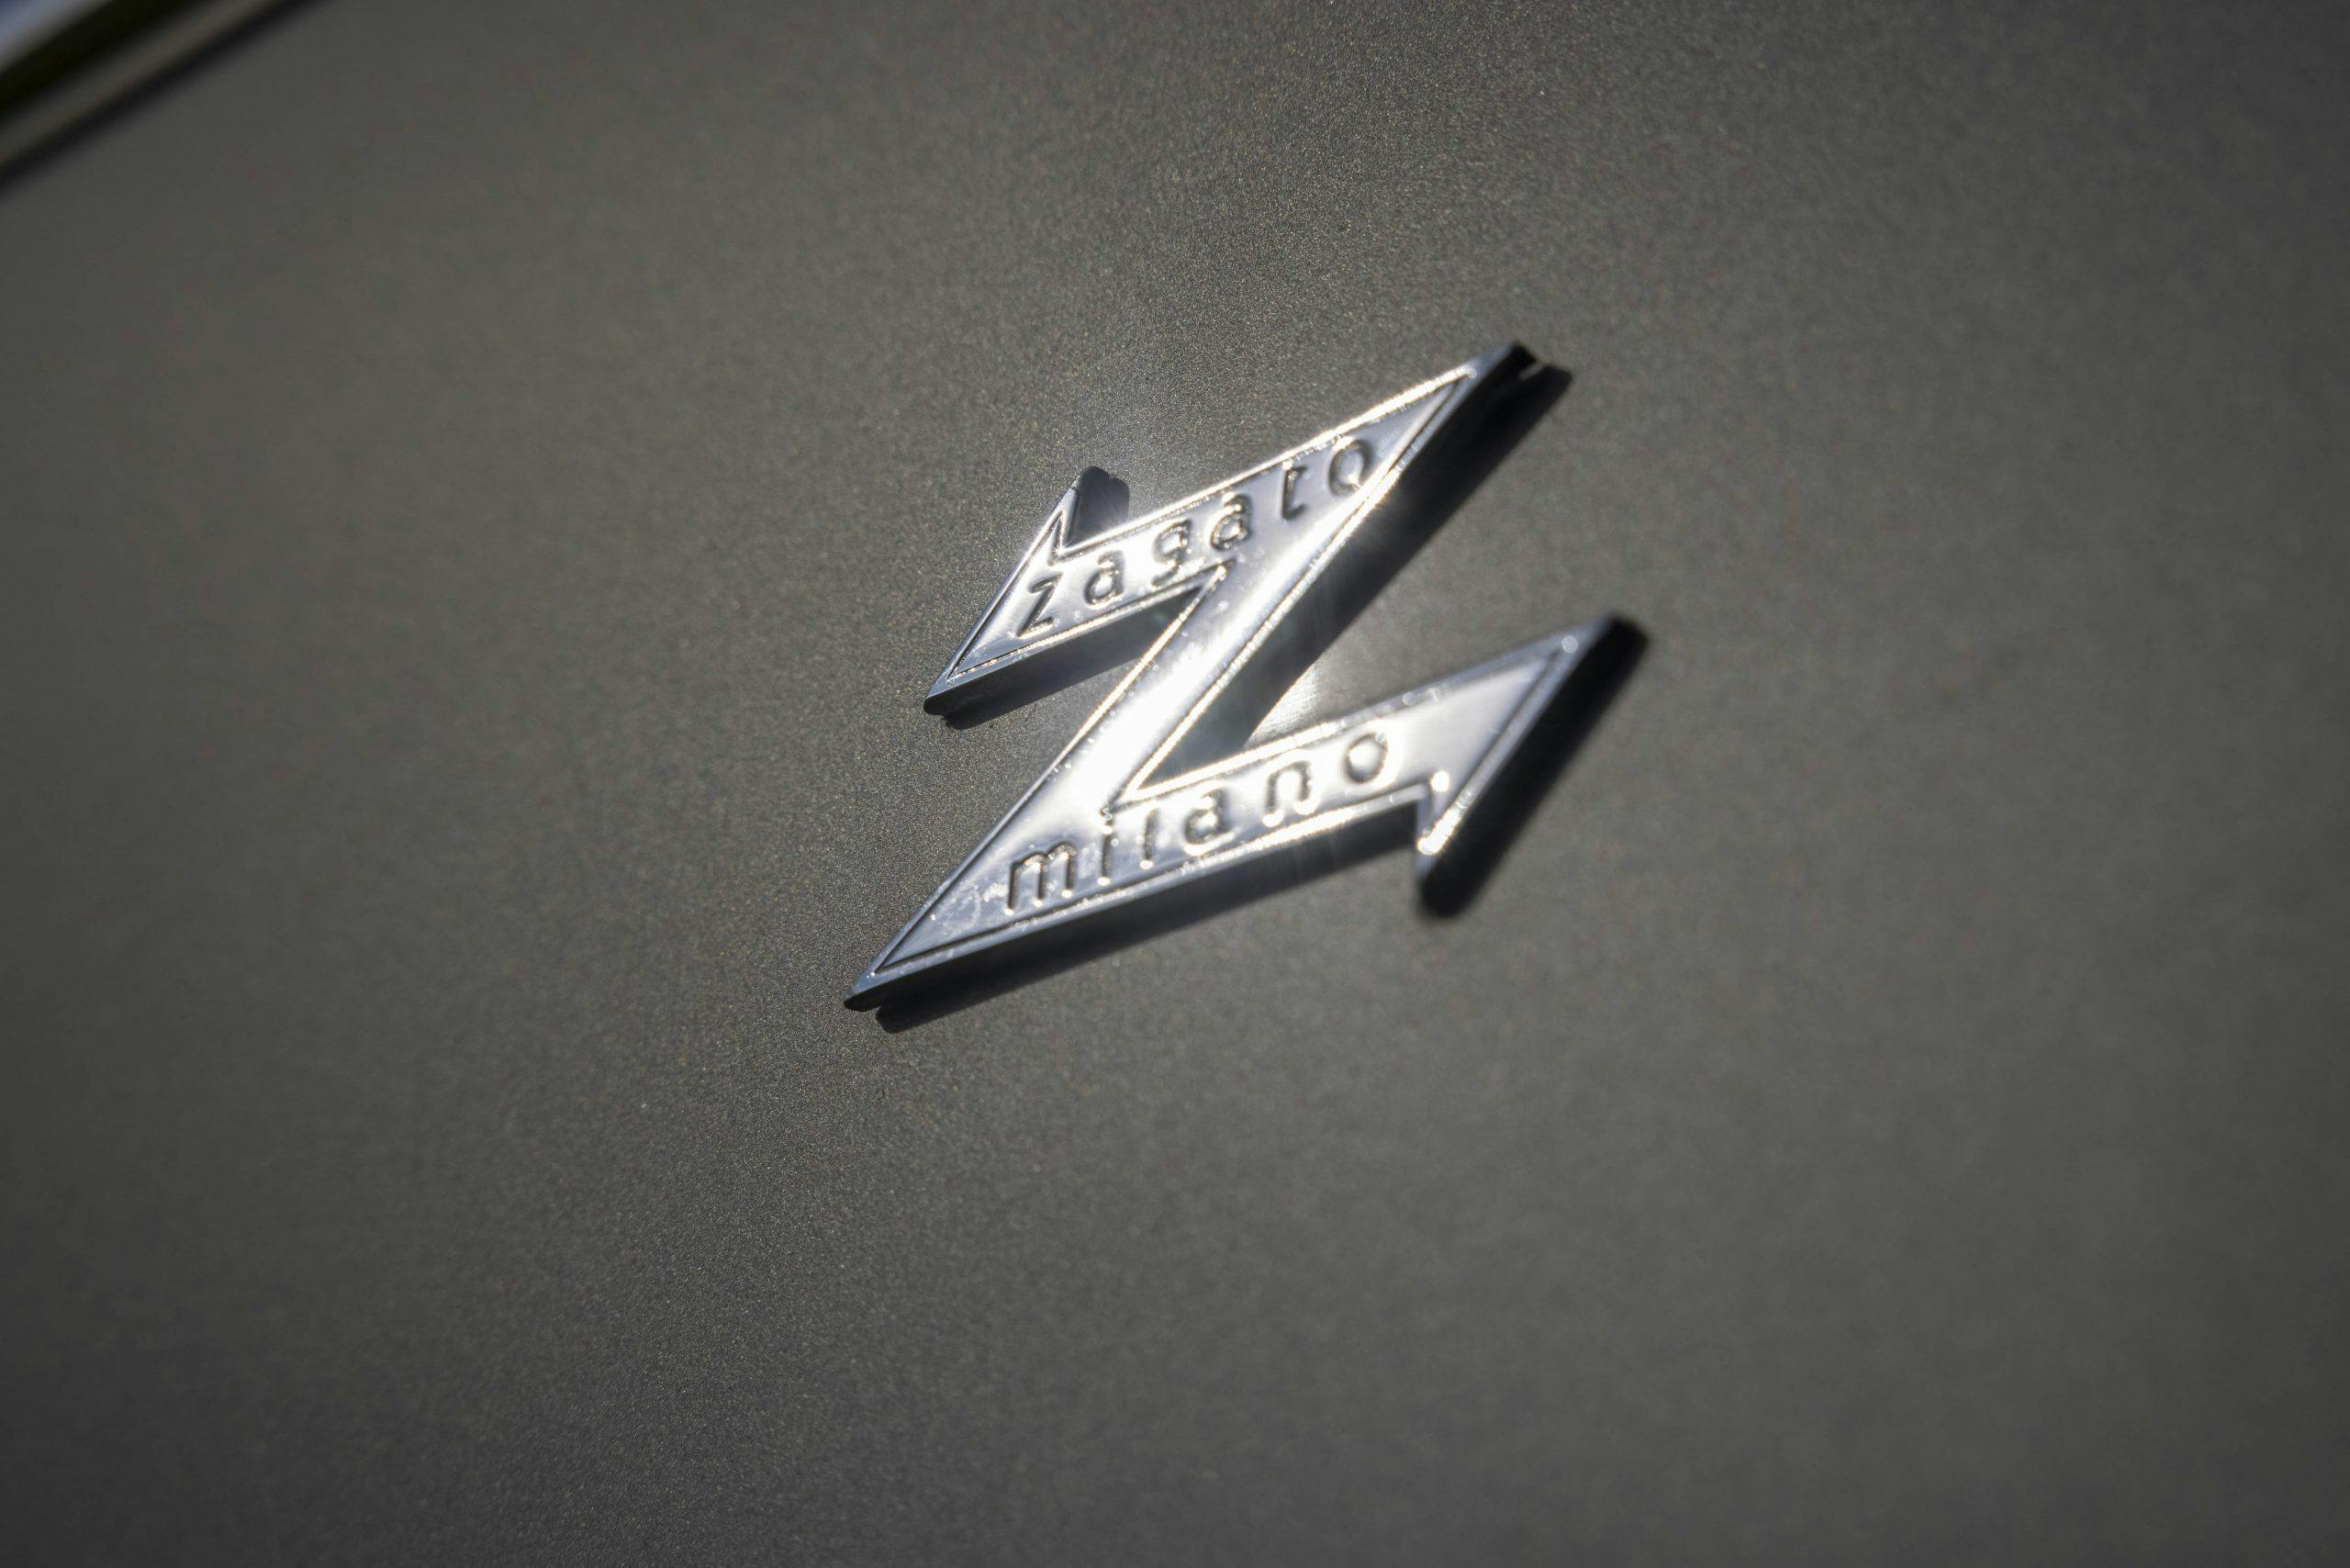 Zagato-bodied Bristol 406 badge